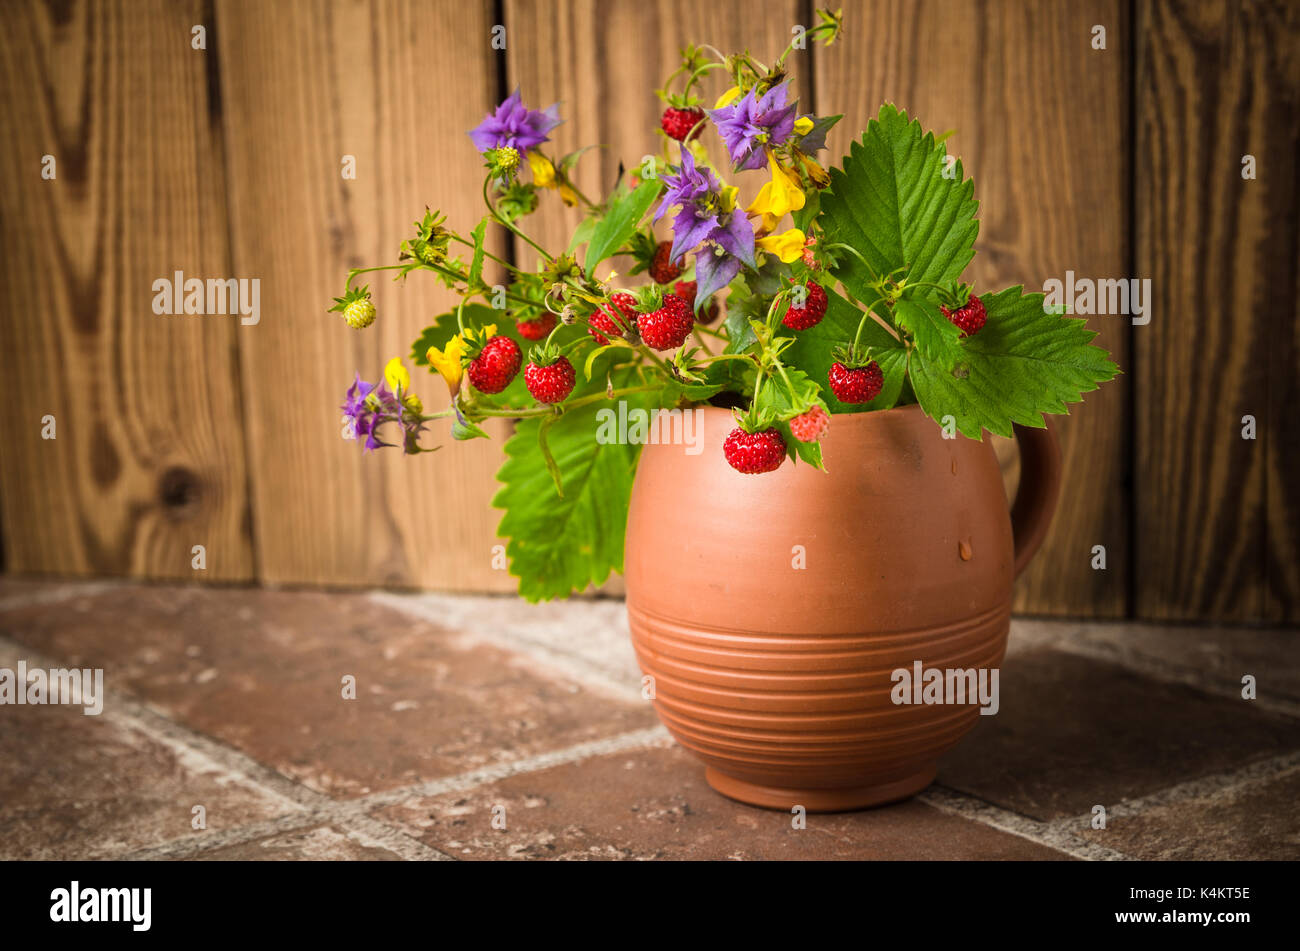 Fraise mûre et un bouquet de fleurs de la forêt dans une tasse d'argile Banque D'Images